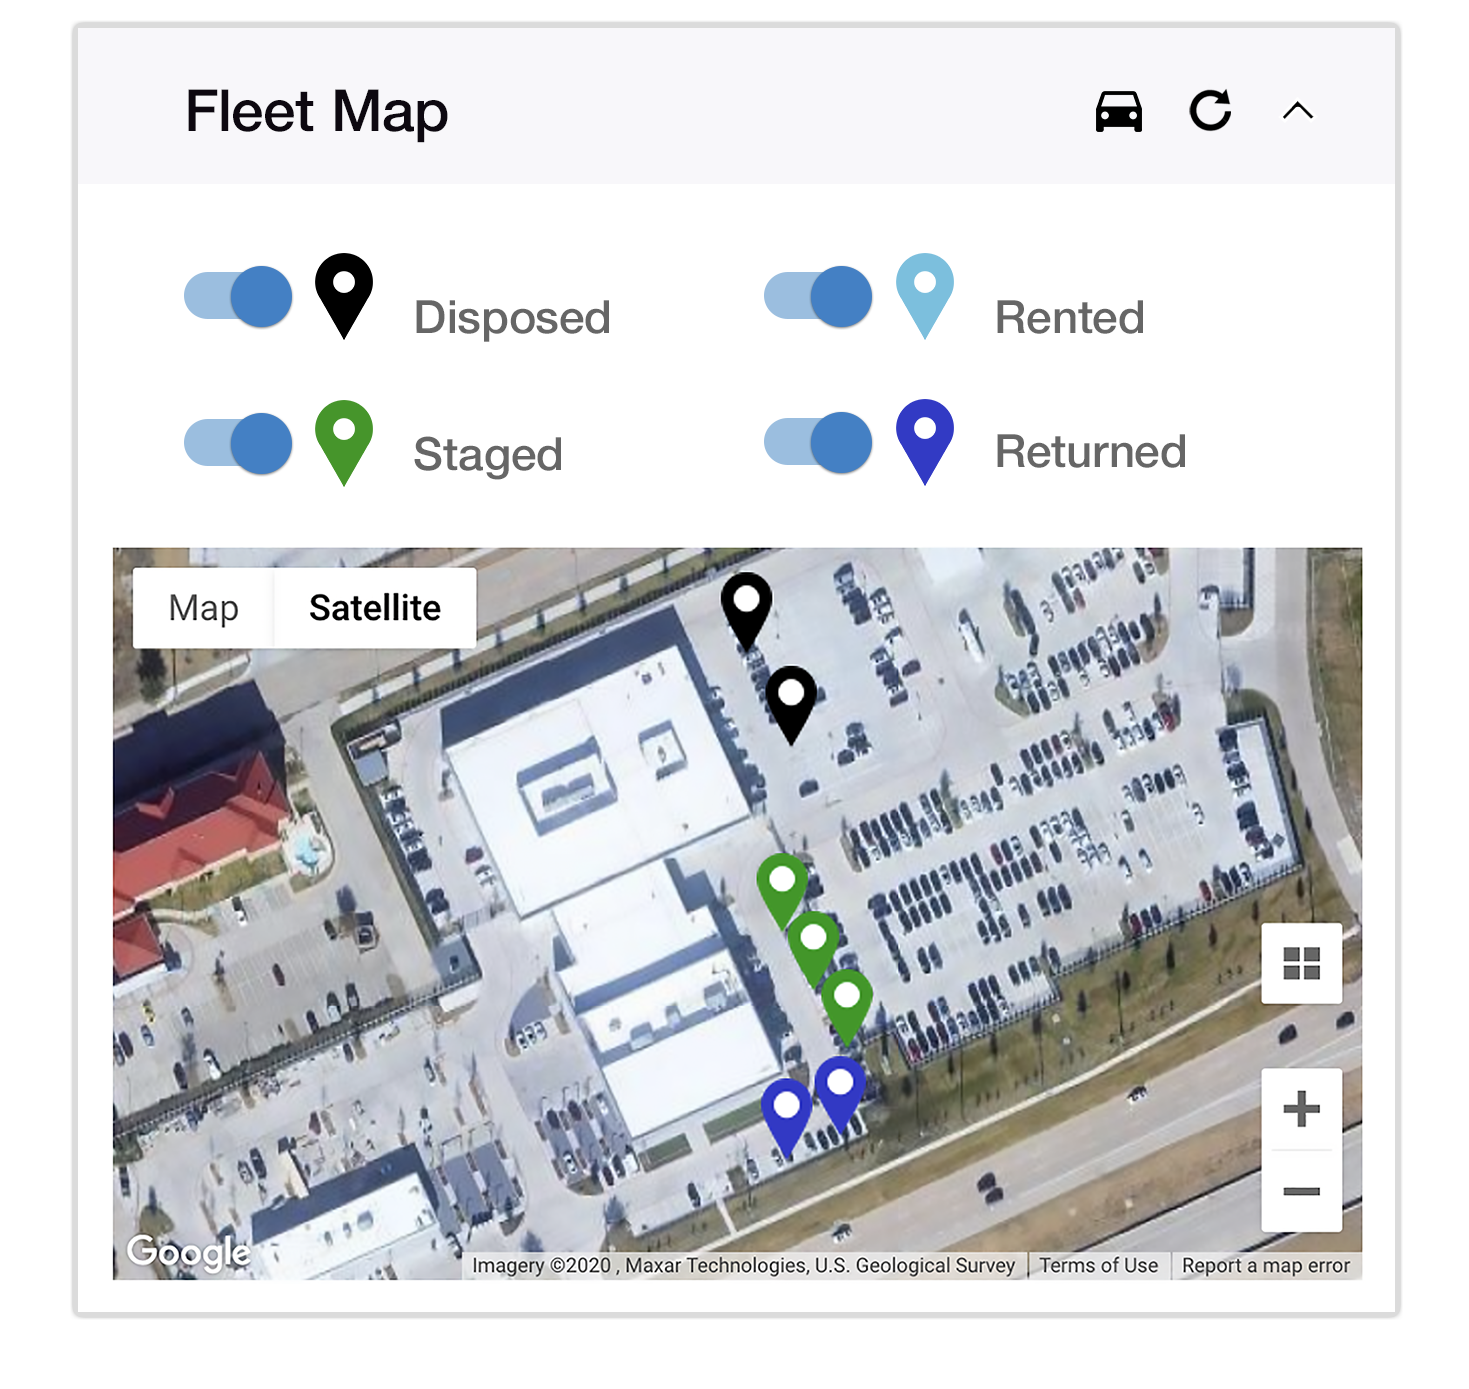 Fleet Map widget on the Dealerware platform